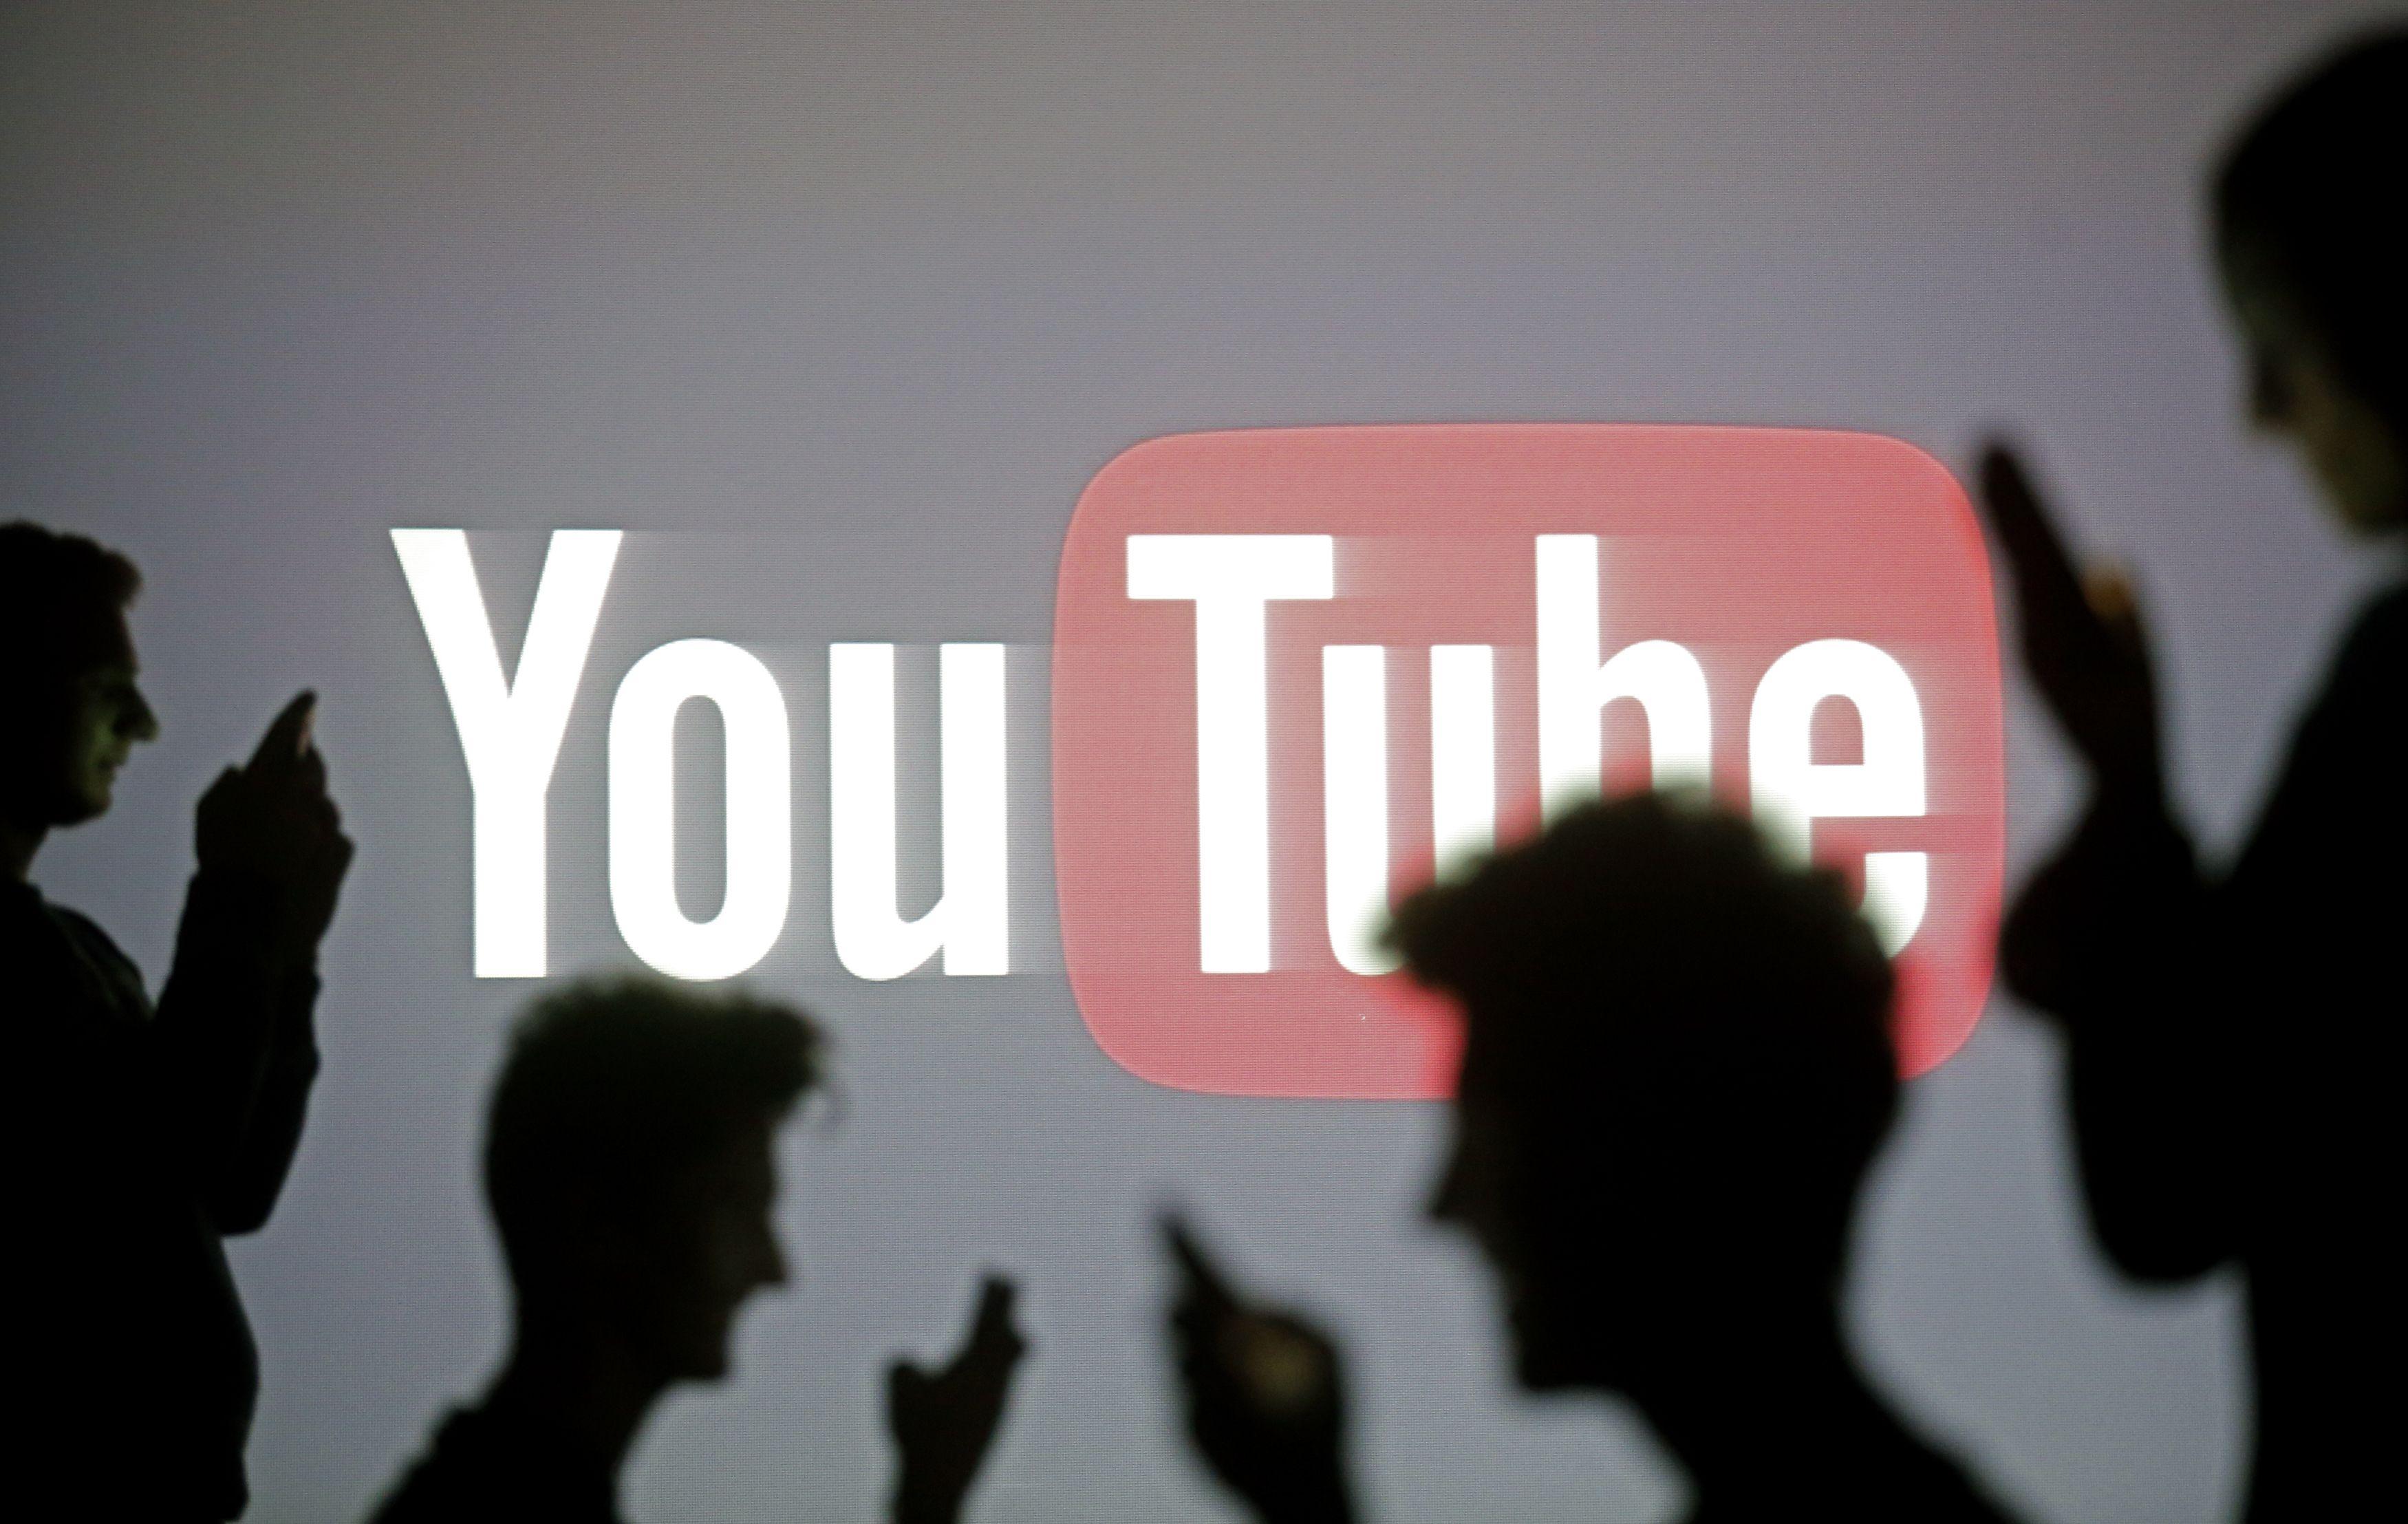 YouTube Stars Logo - YouTube stars in Google's latest earnings call